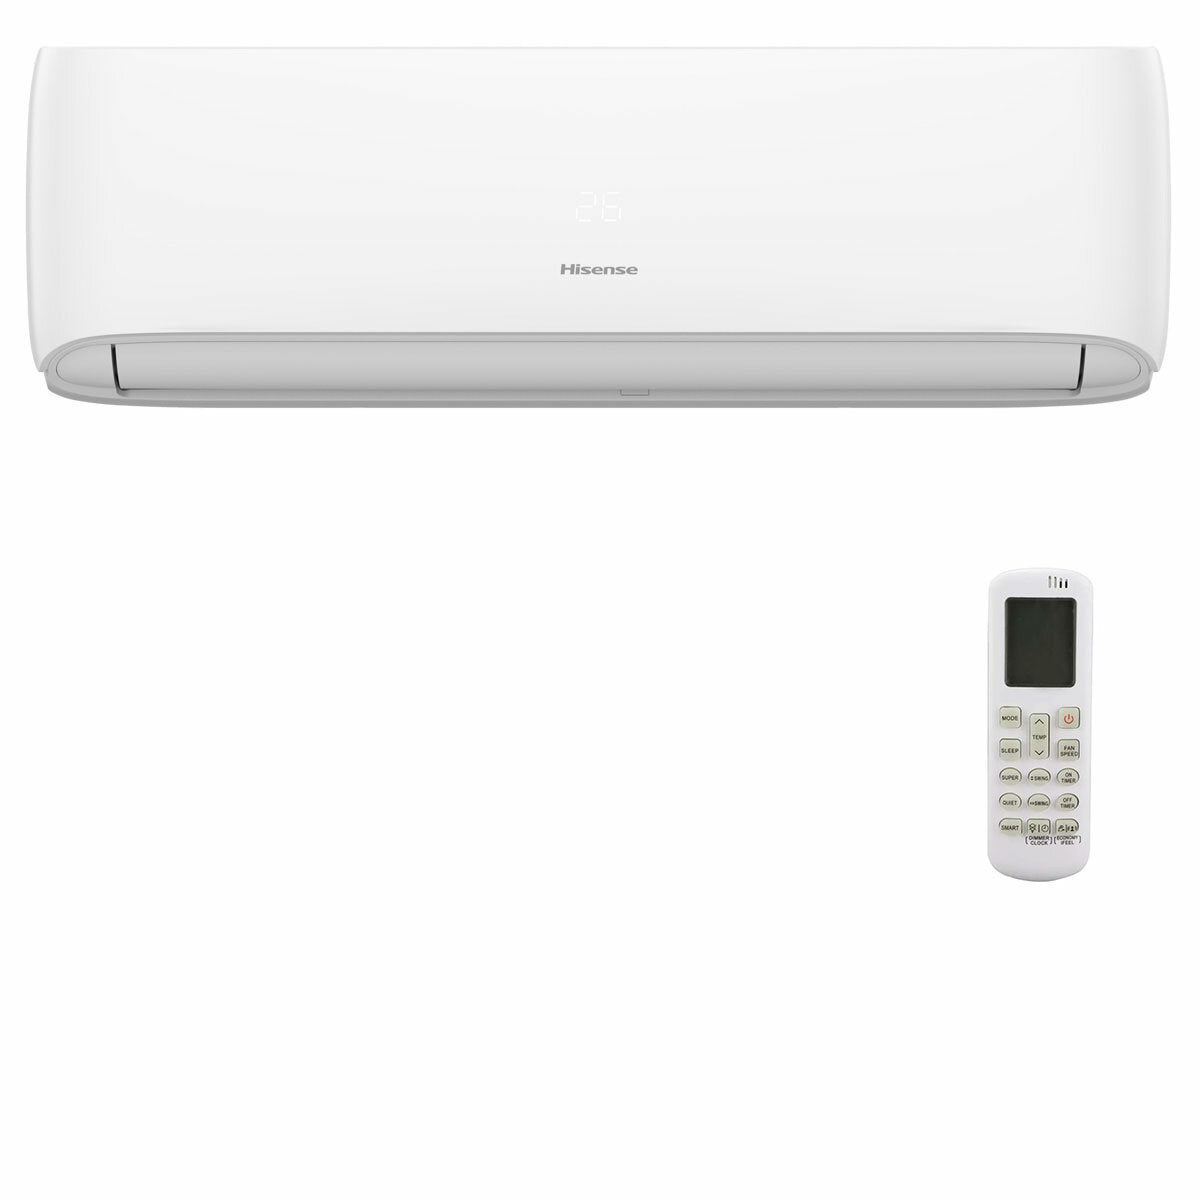 Hisense Hi-Comfort quadri split air conditioner 7000 + 9000 + 12000 + 12000 BTU inverter A++ wifi outdoor unit 8 kW